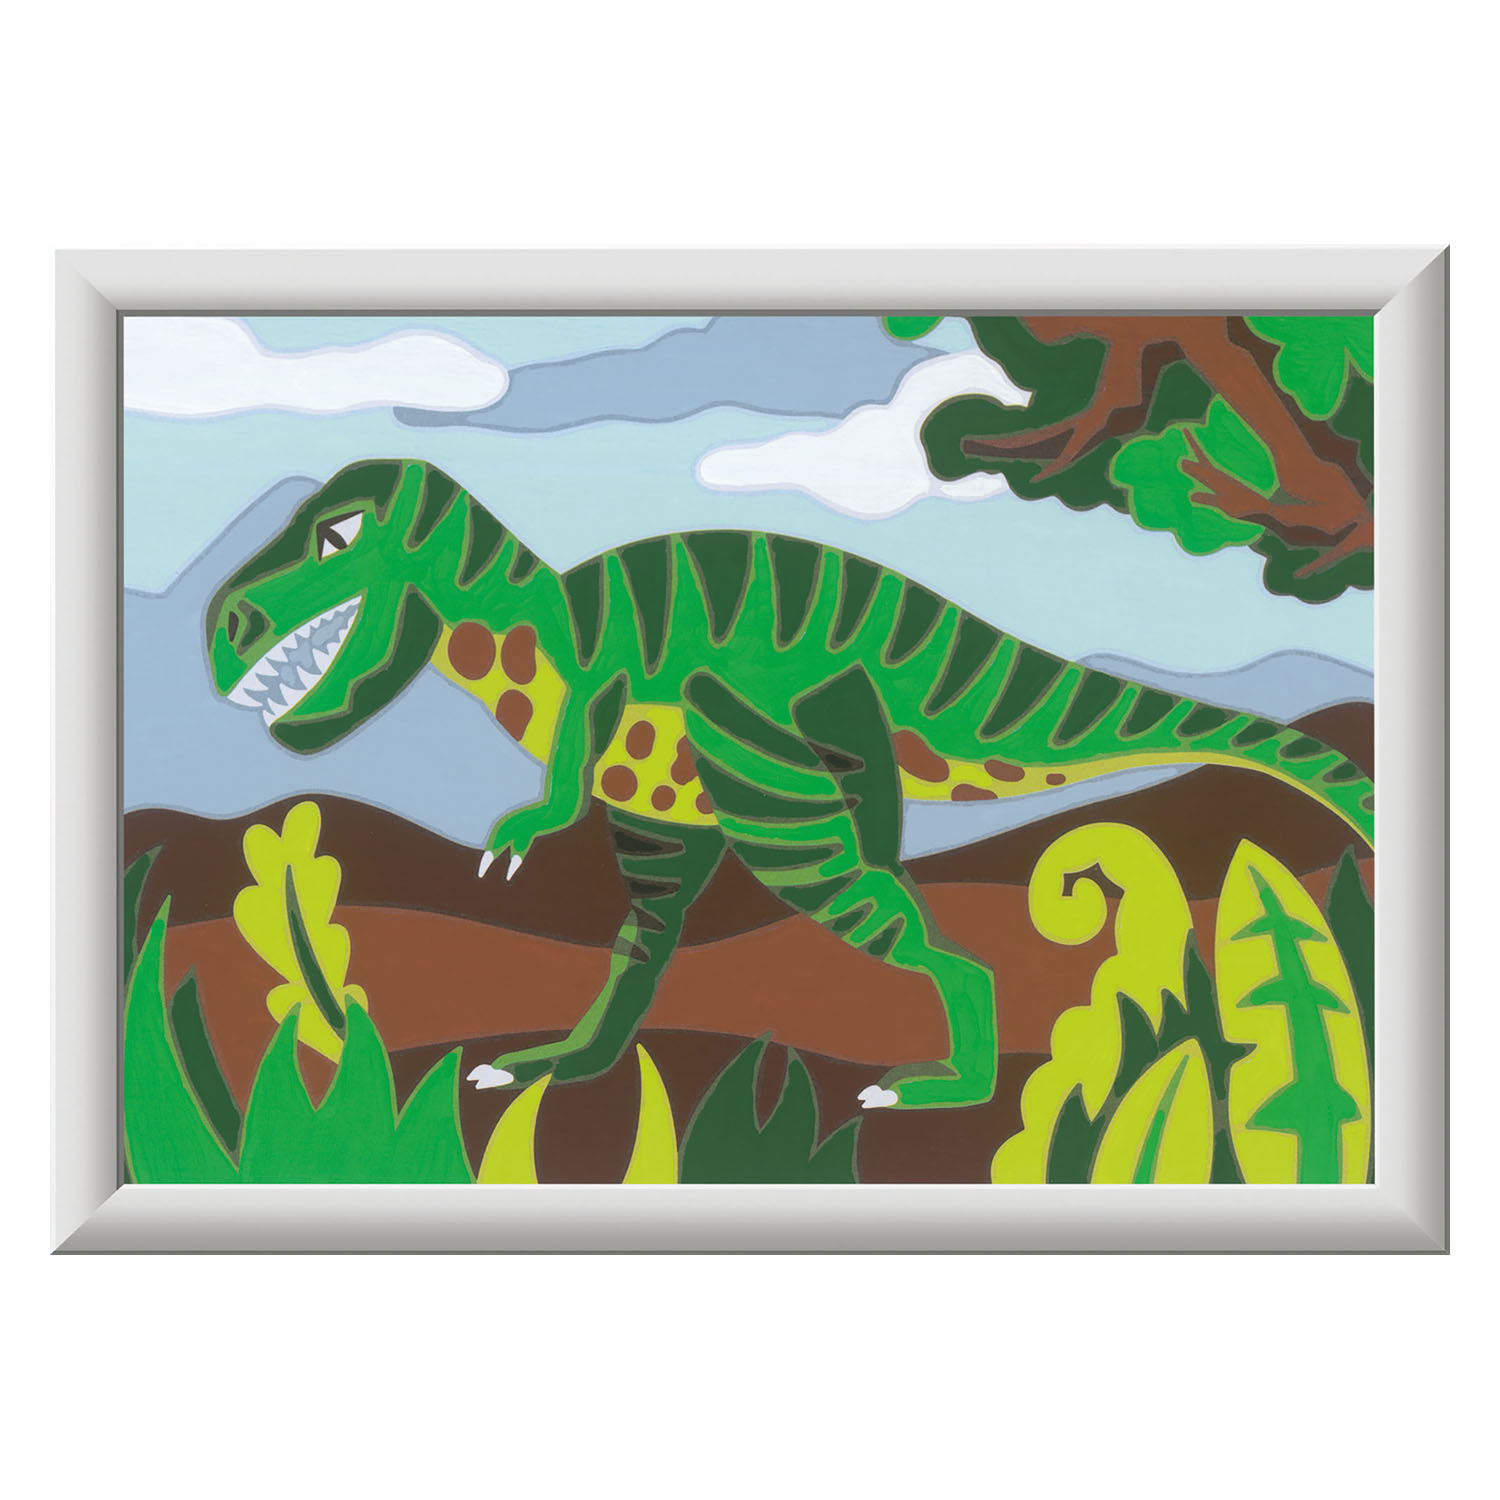 CreArt Schilderen op Nummer - Dwalende Dinosaurus